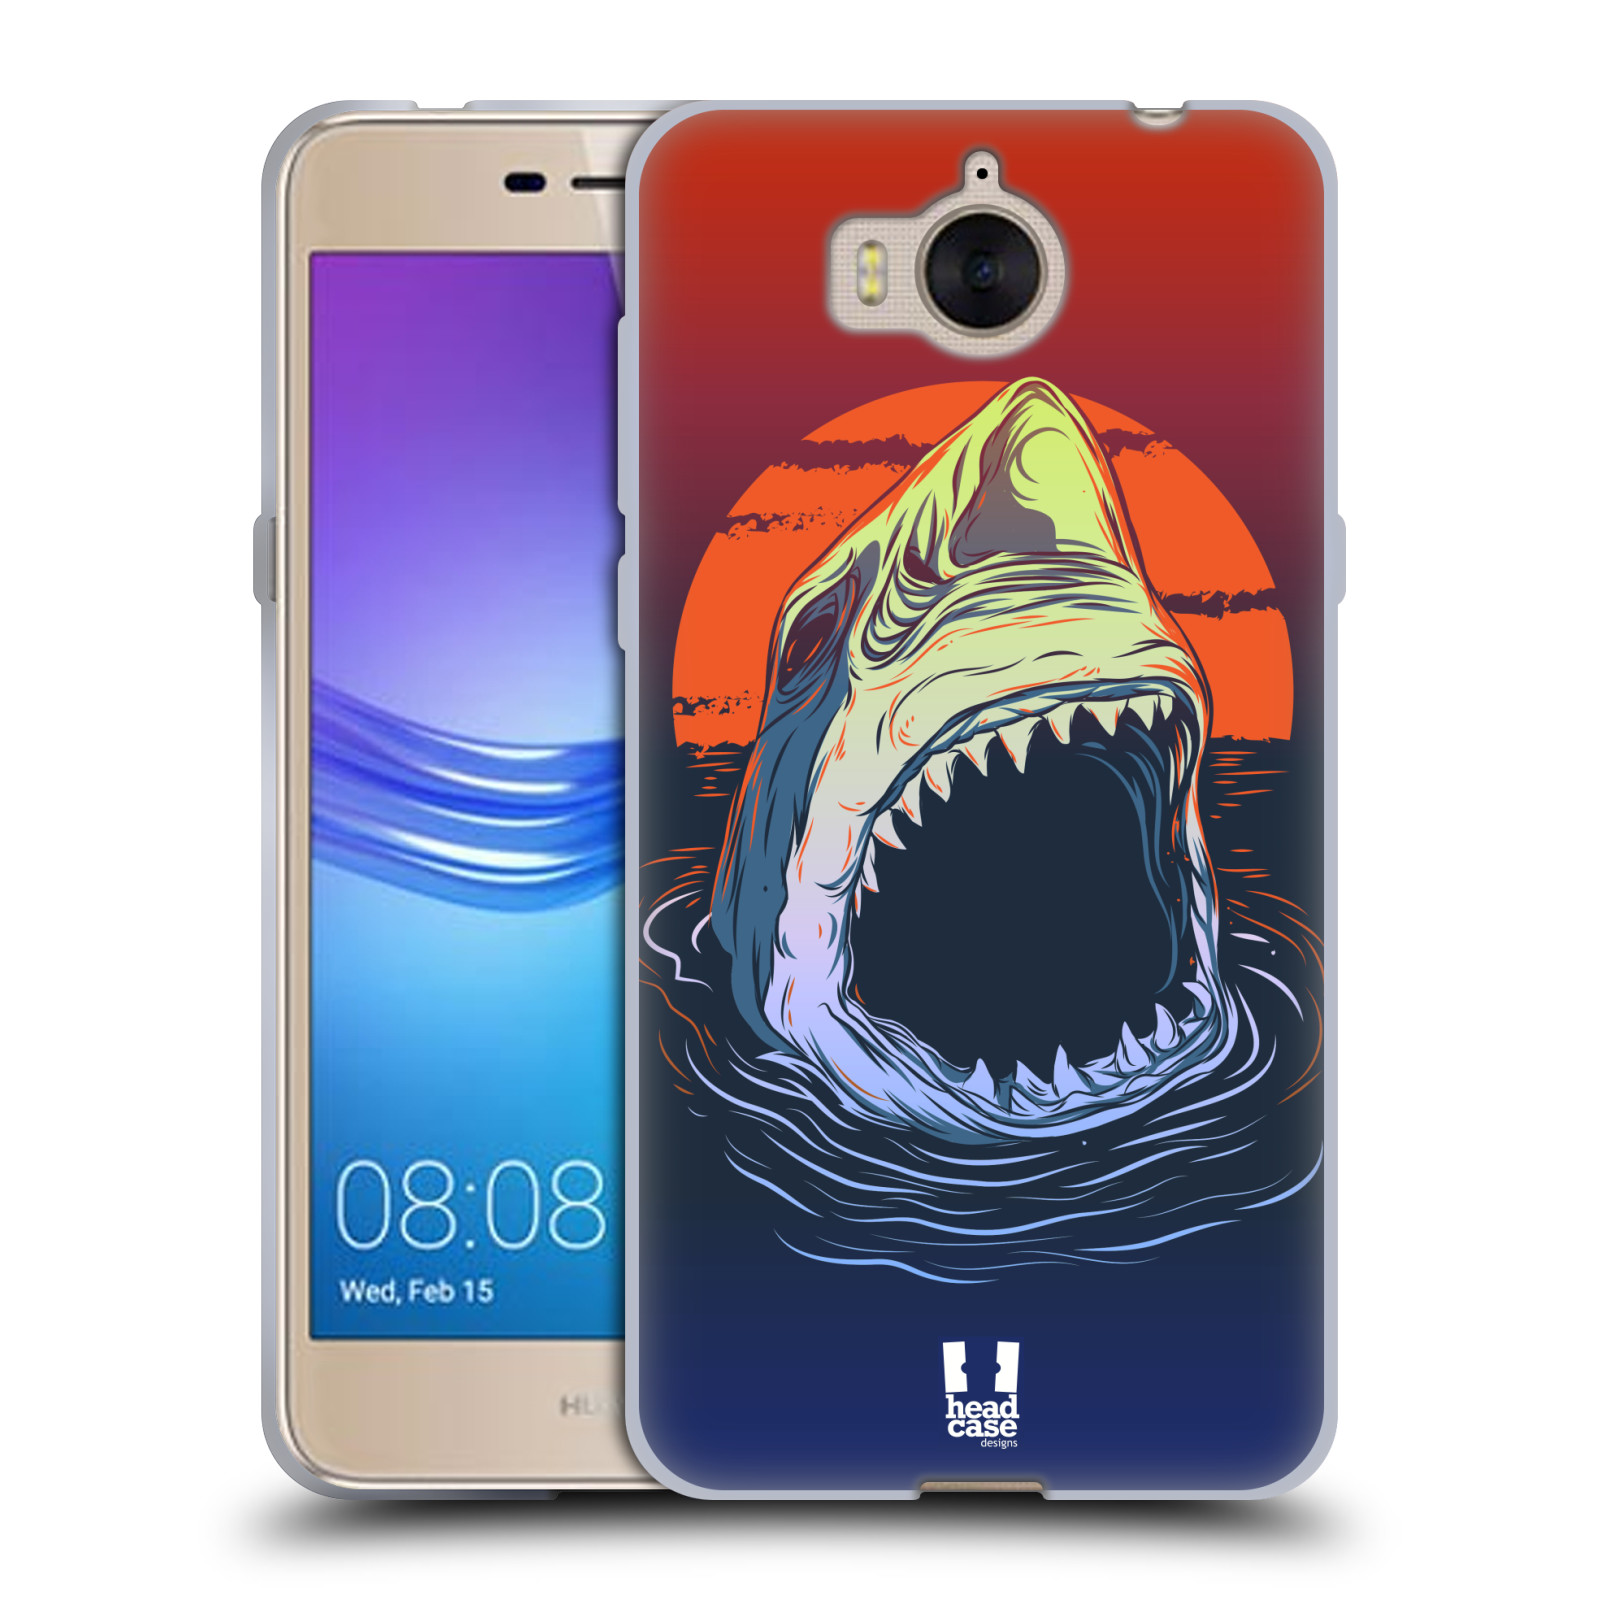 HEAD CASE silikonový obal na mobil Huawei Y6 2017 vzor mořská monstra žralok